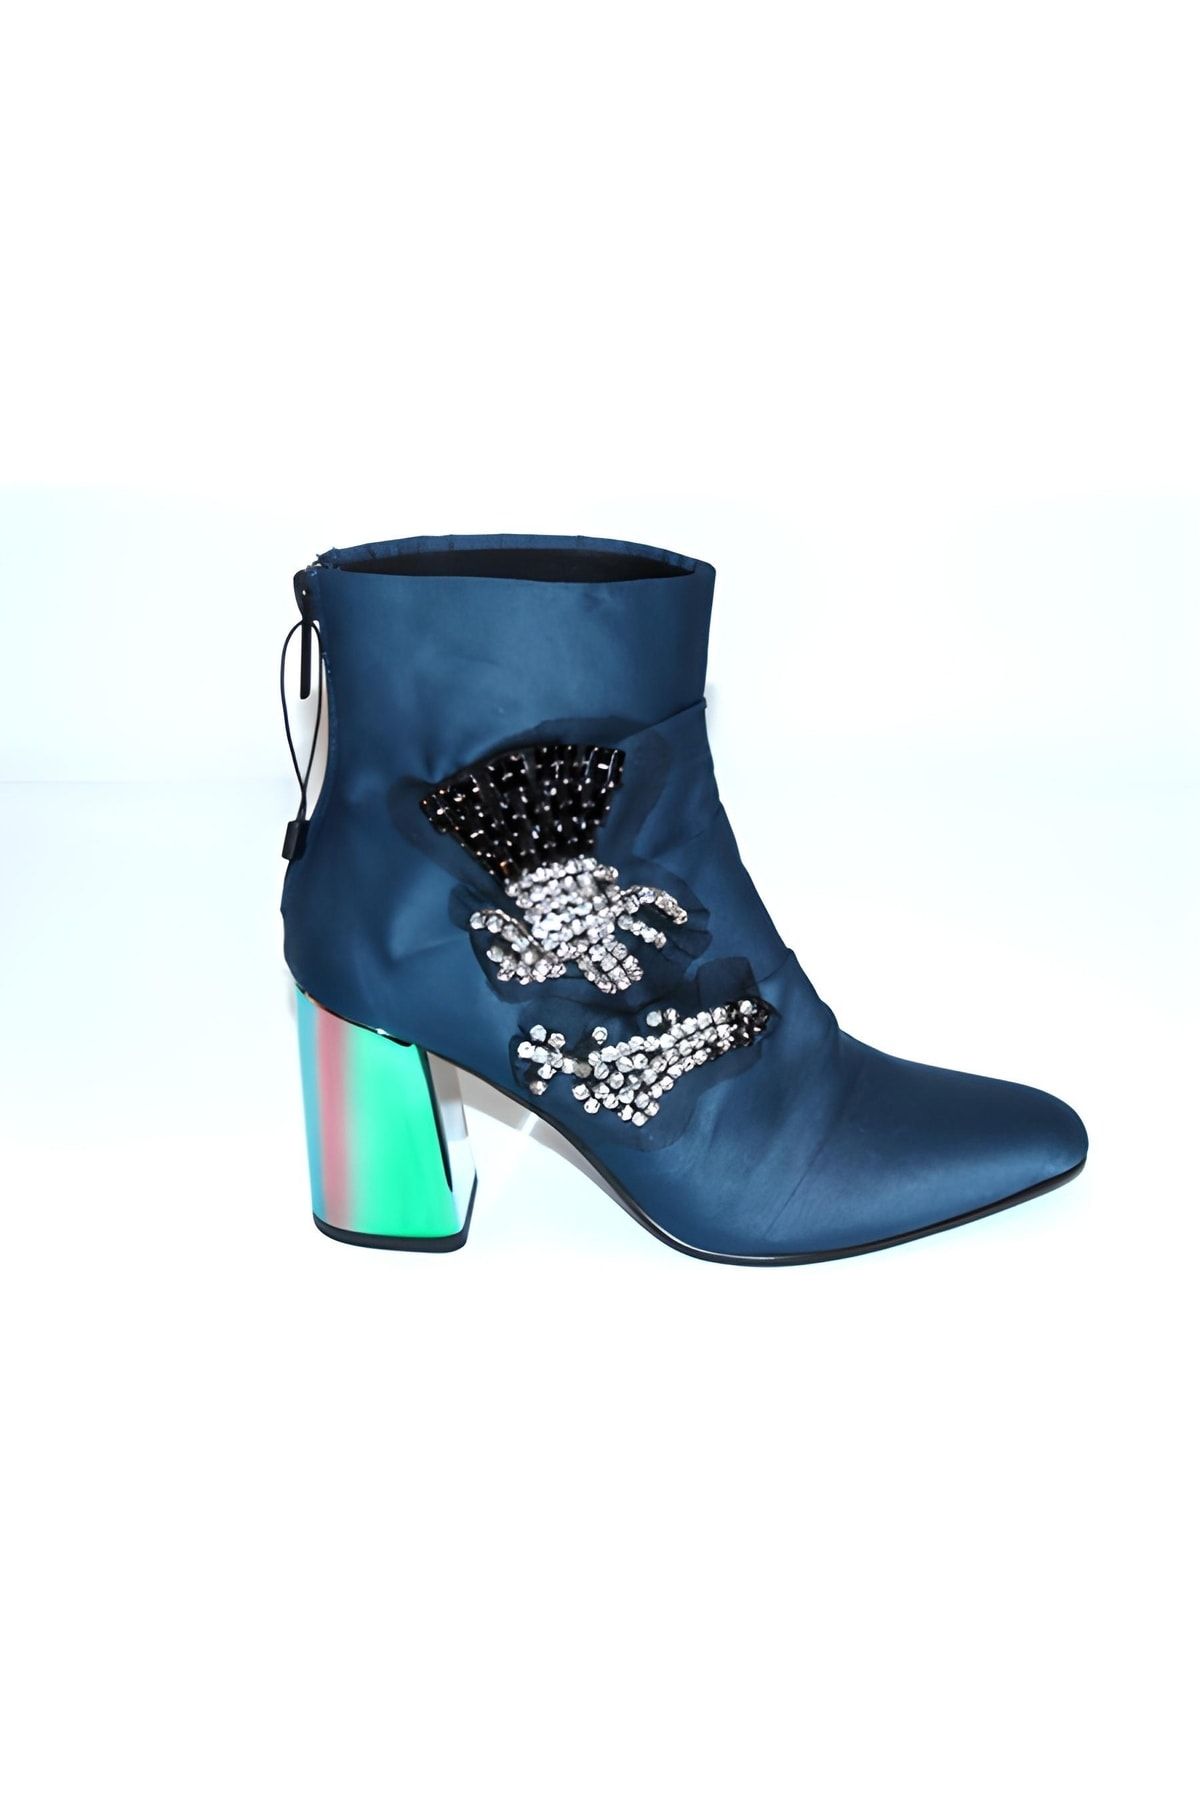 Karnaval Ayakkabı Alçak Topuk Indigo Mavi Deri Siyah-gümüş Taşlı Günlük Kadın Bot